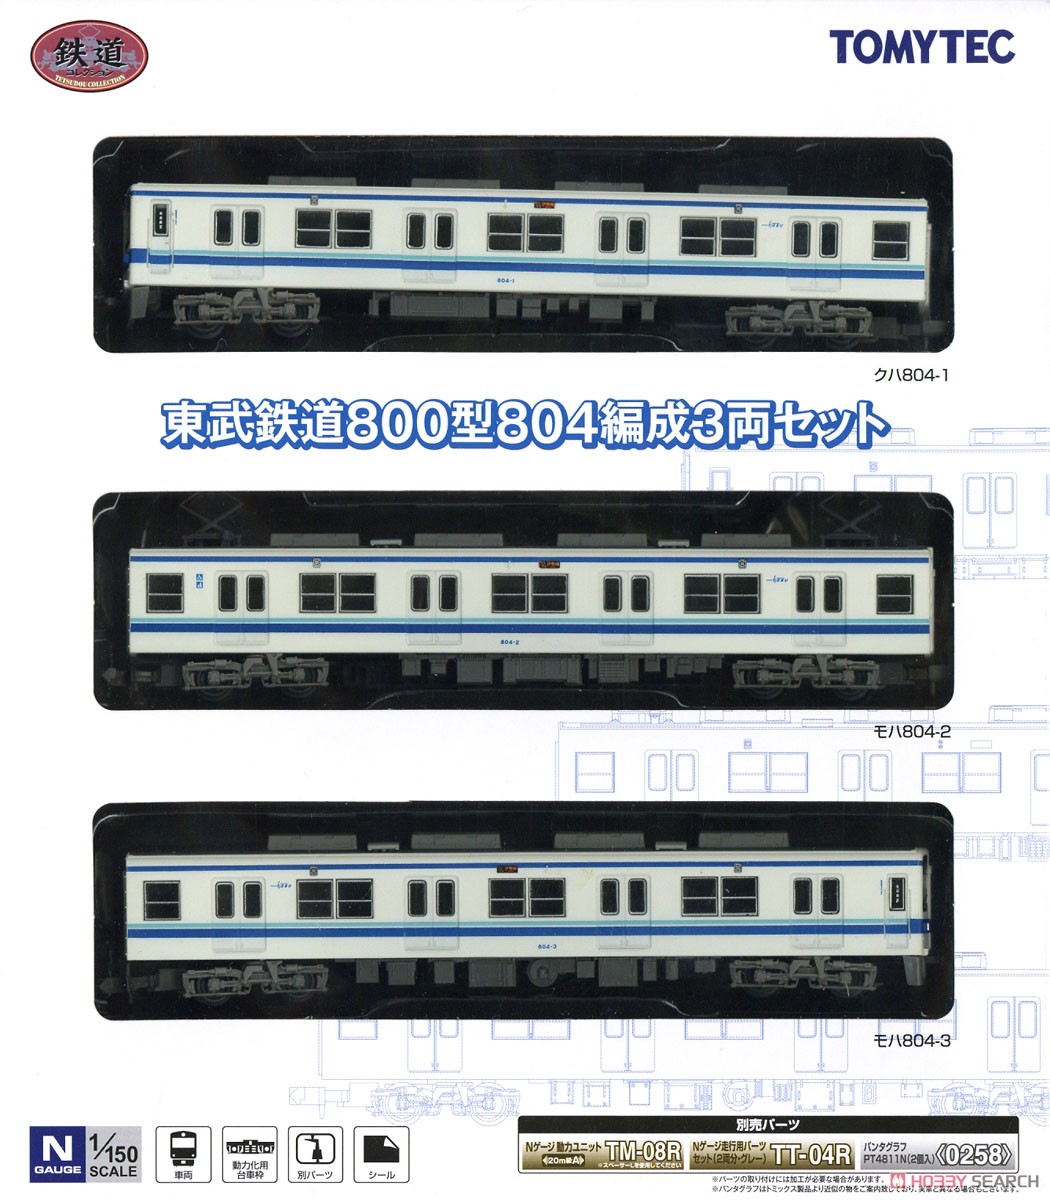 鉄道コレクション 東武鉄道 800型 804編成 (3両セット) (鉄道模型) パッケージ1